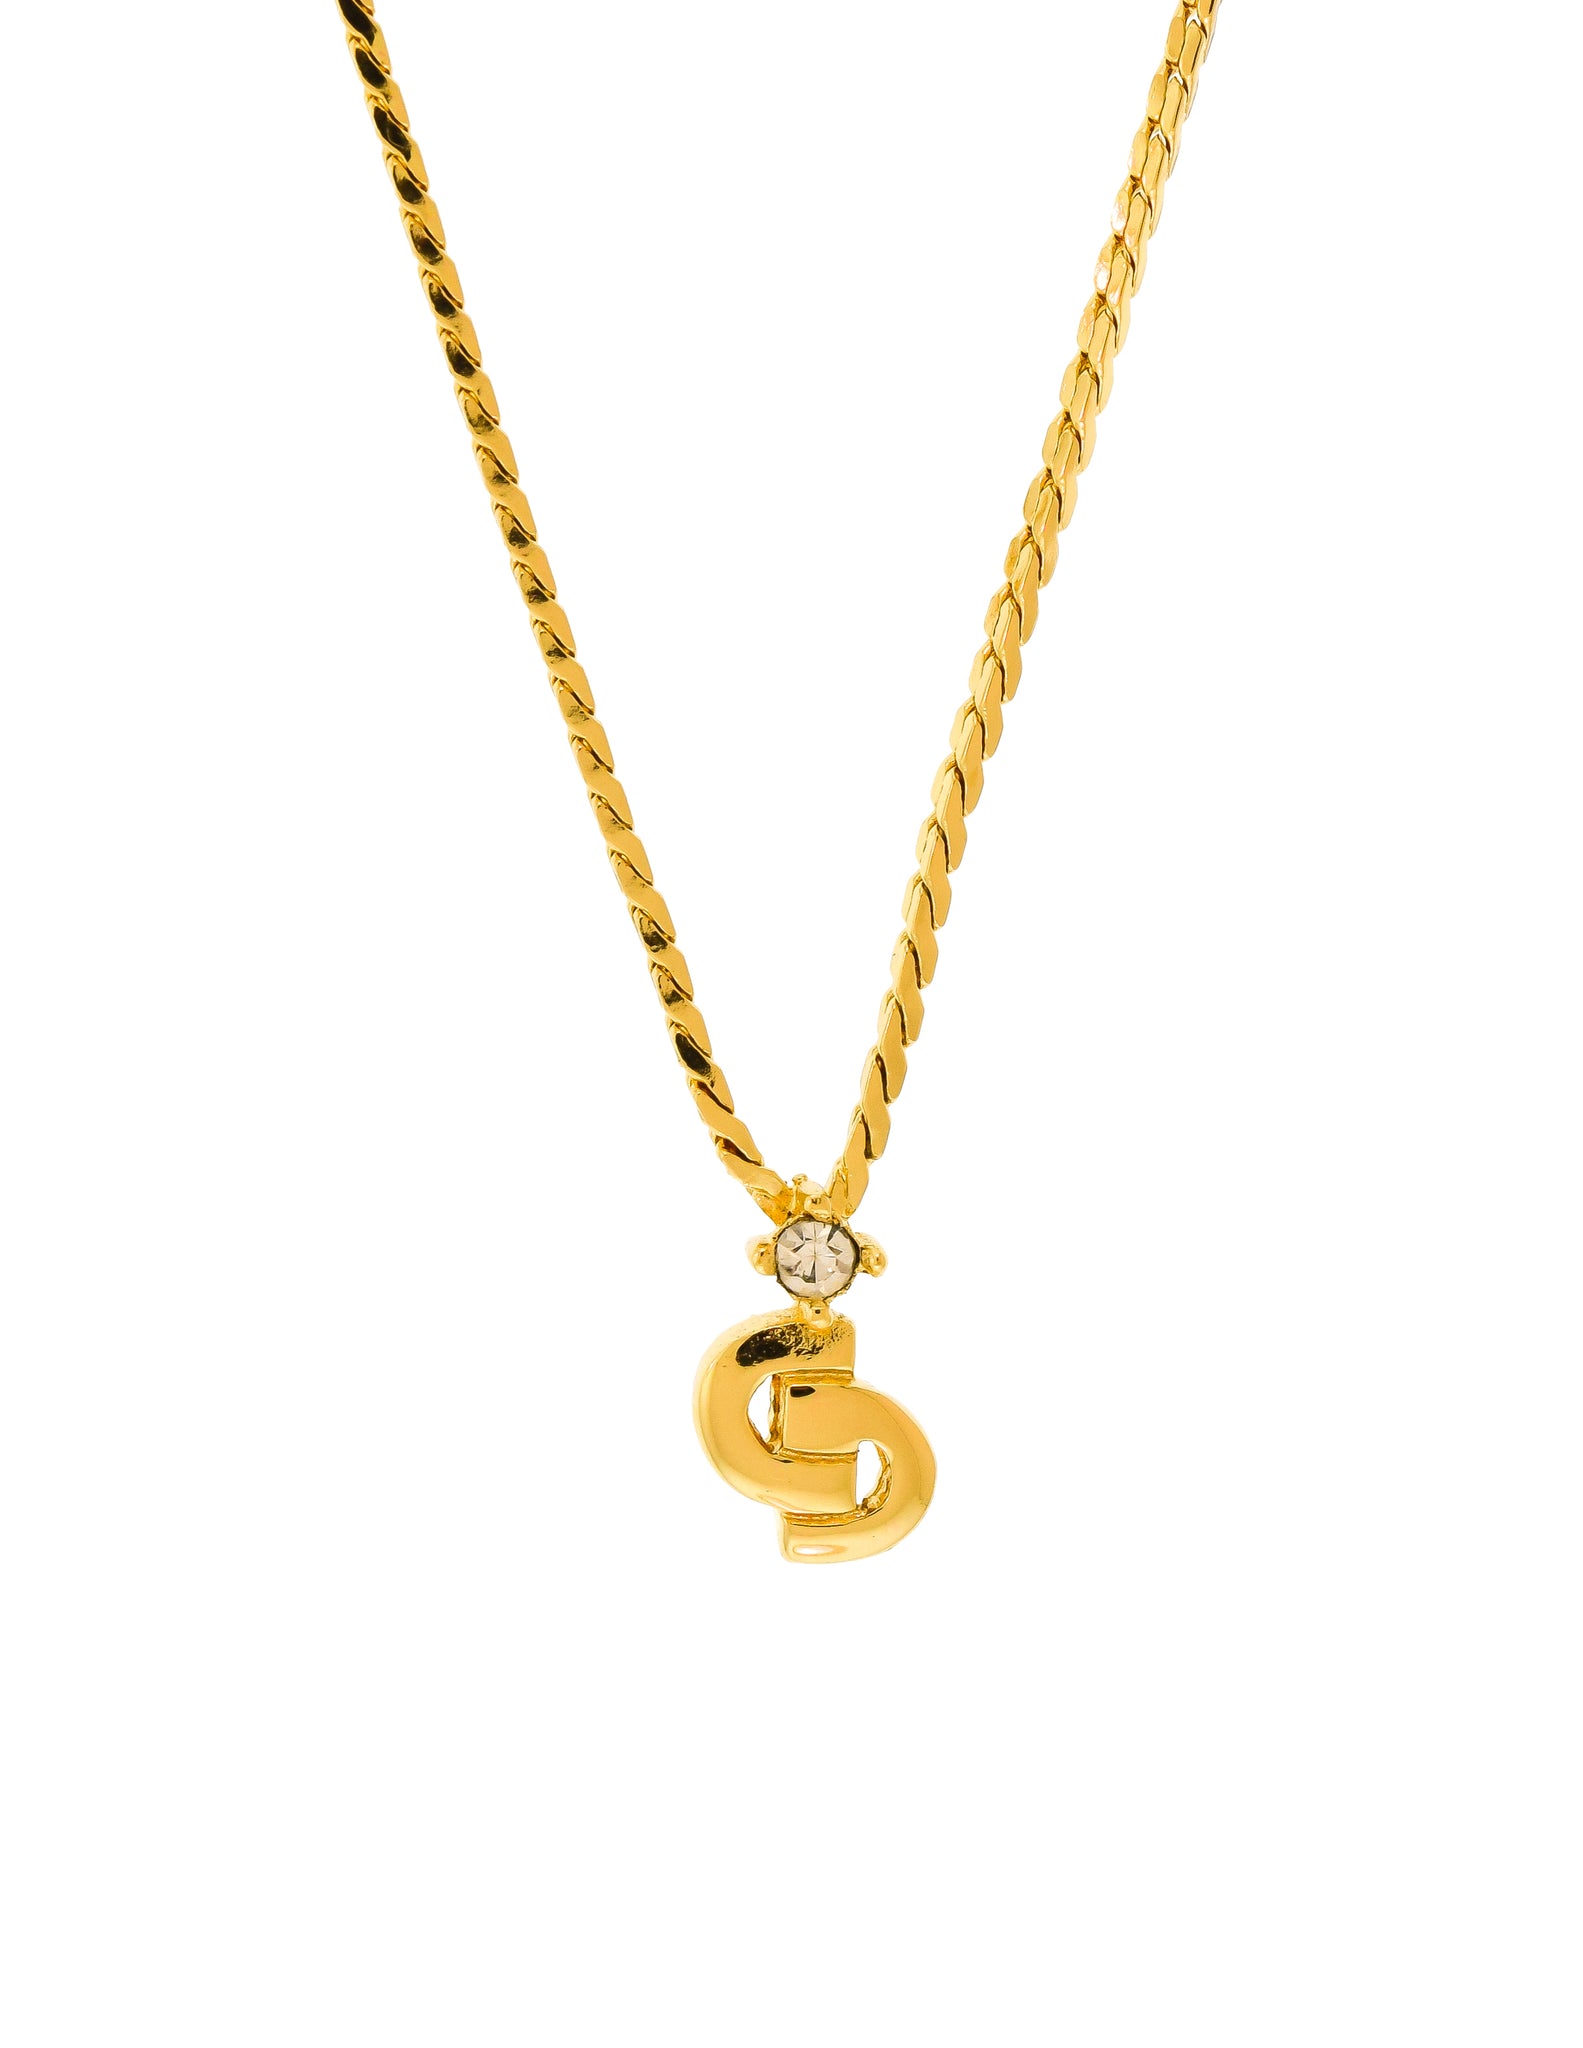 Chiếc Christian Dior Vintage Gold Rhinestone Mini CD Logo Charm Chain là một sản phẩm tuyệt vời dành cho những ai yêu thích sự sang trọng và quý phái. Với thiết kế độc đáo, đẹp mắt và được làm từ chất liệu vàng 14K cao cấp, chiếc chuỗi này sẽ khiến bạn trông thật cuốn hút và nổi bật. Hãy xem hình ảnh để cảm nhận sự đẹp của chúng.